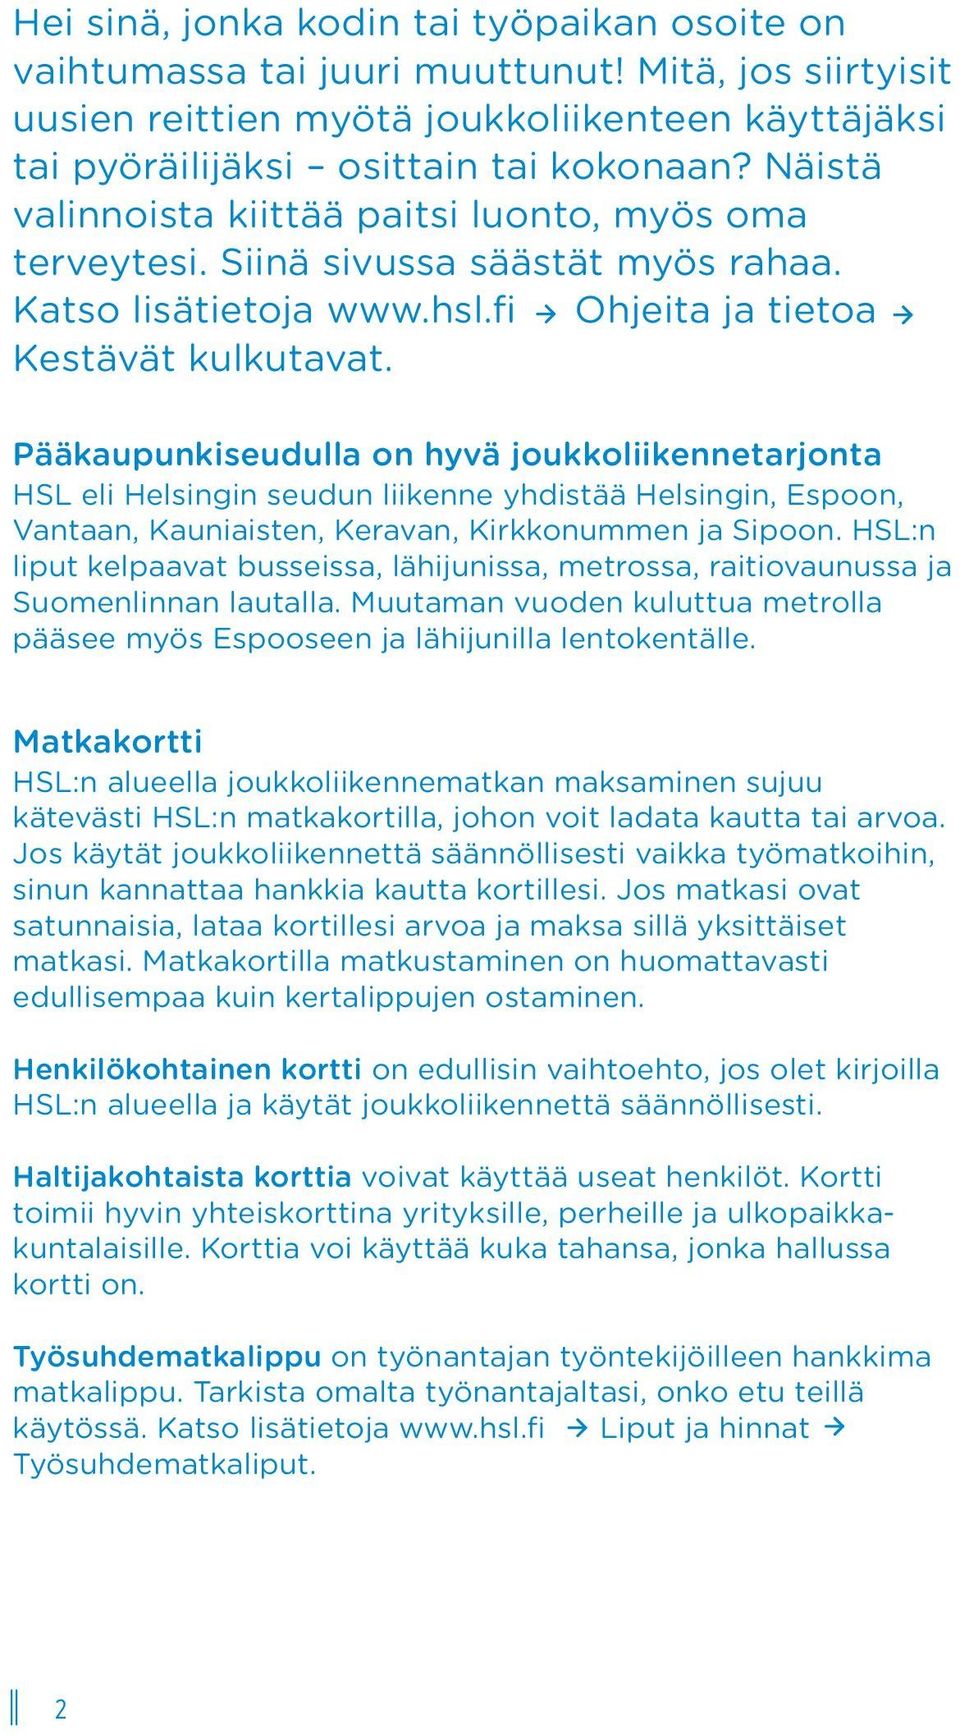 Pääkaupunkiseudulla on hyvä joukkoliikennetarjonta HSL eli Helsingin seudun liikenne yhdistää Helsingin, Espoon, Vantaan, Kauniaisten, Keravan, Kirkkonummen ja Sipoon.